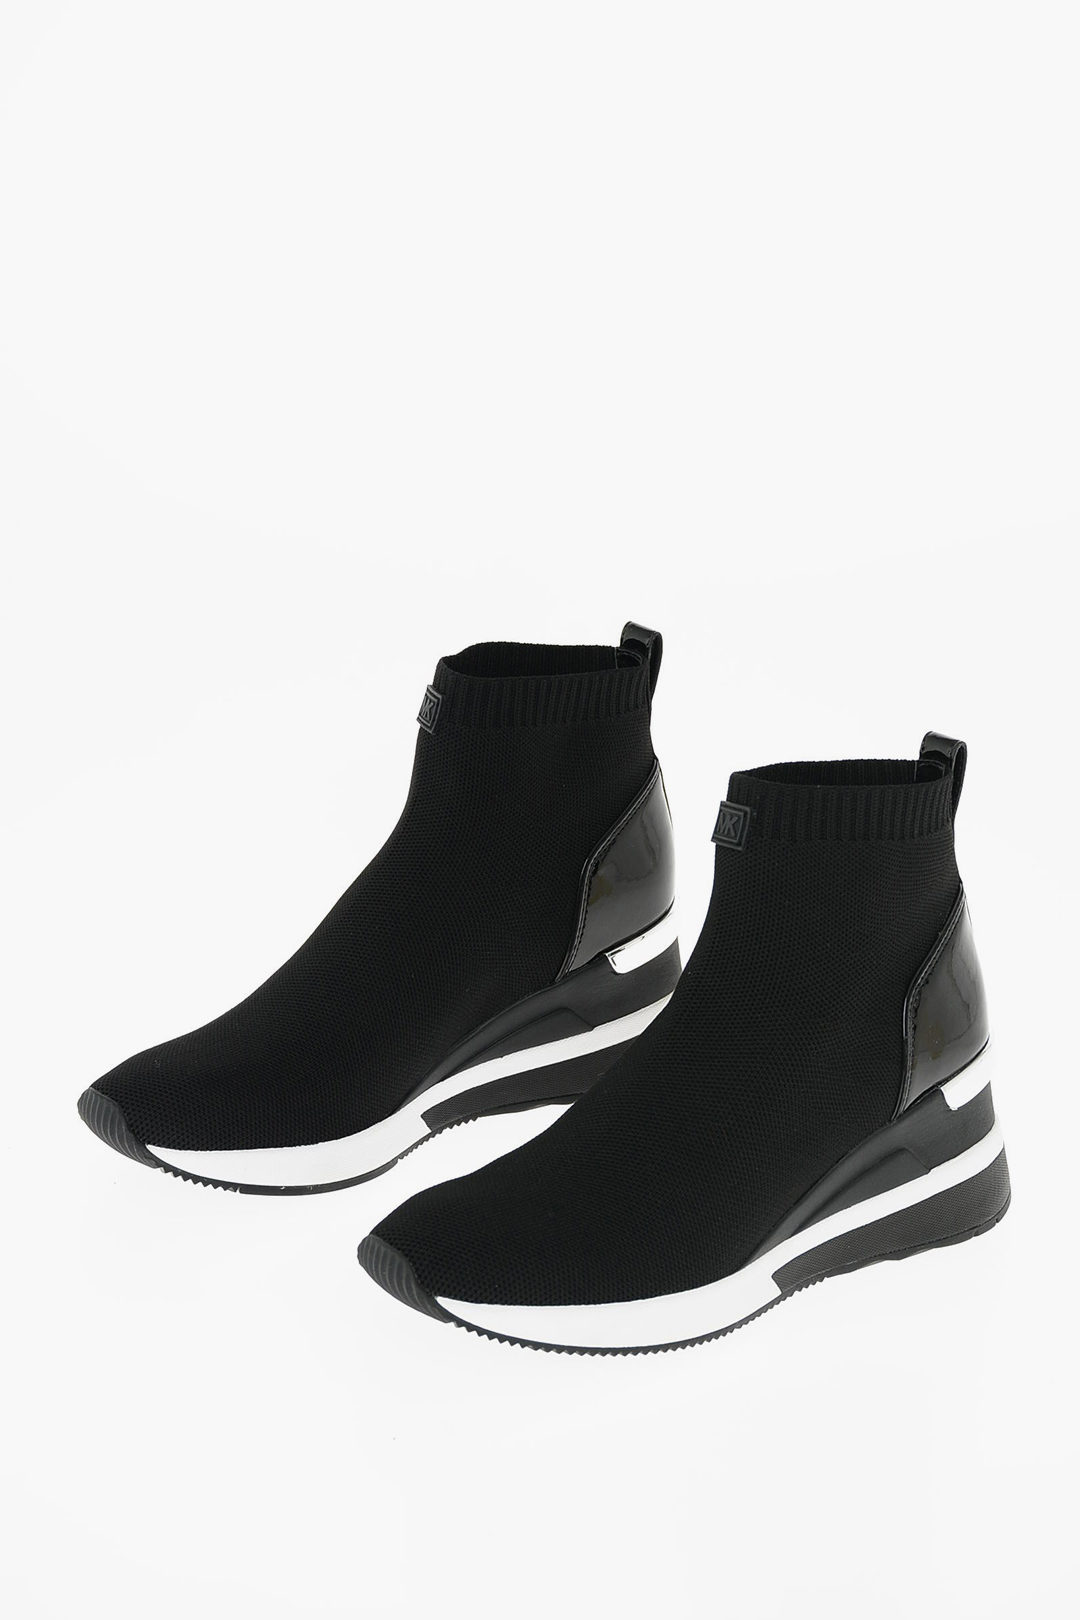 Michael Kors Skyler Sock Sneakers Womens Fashion Footwear Sneakers on  Carousell